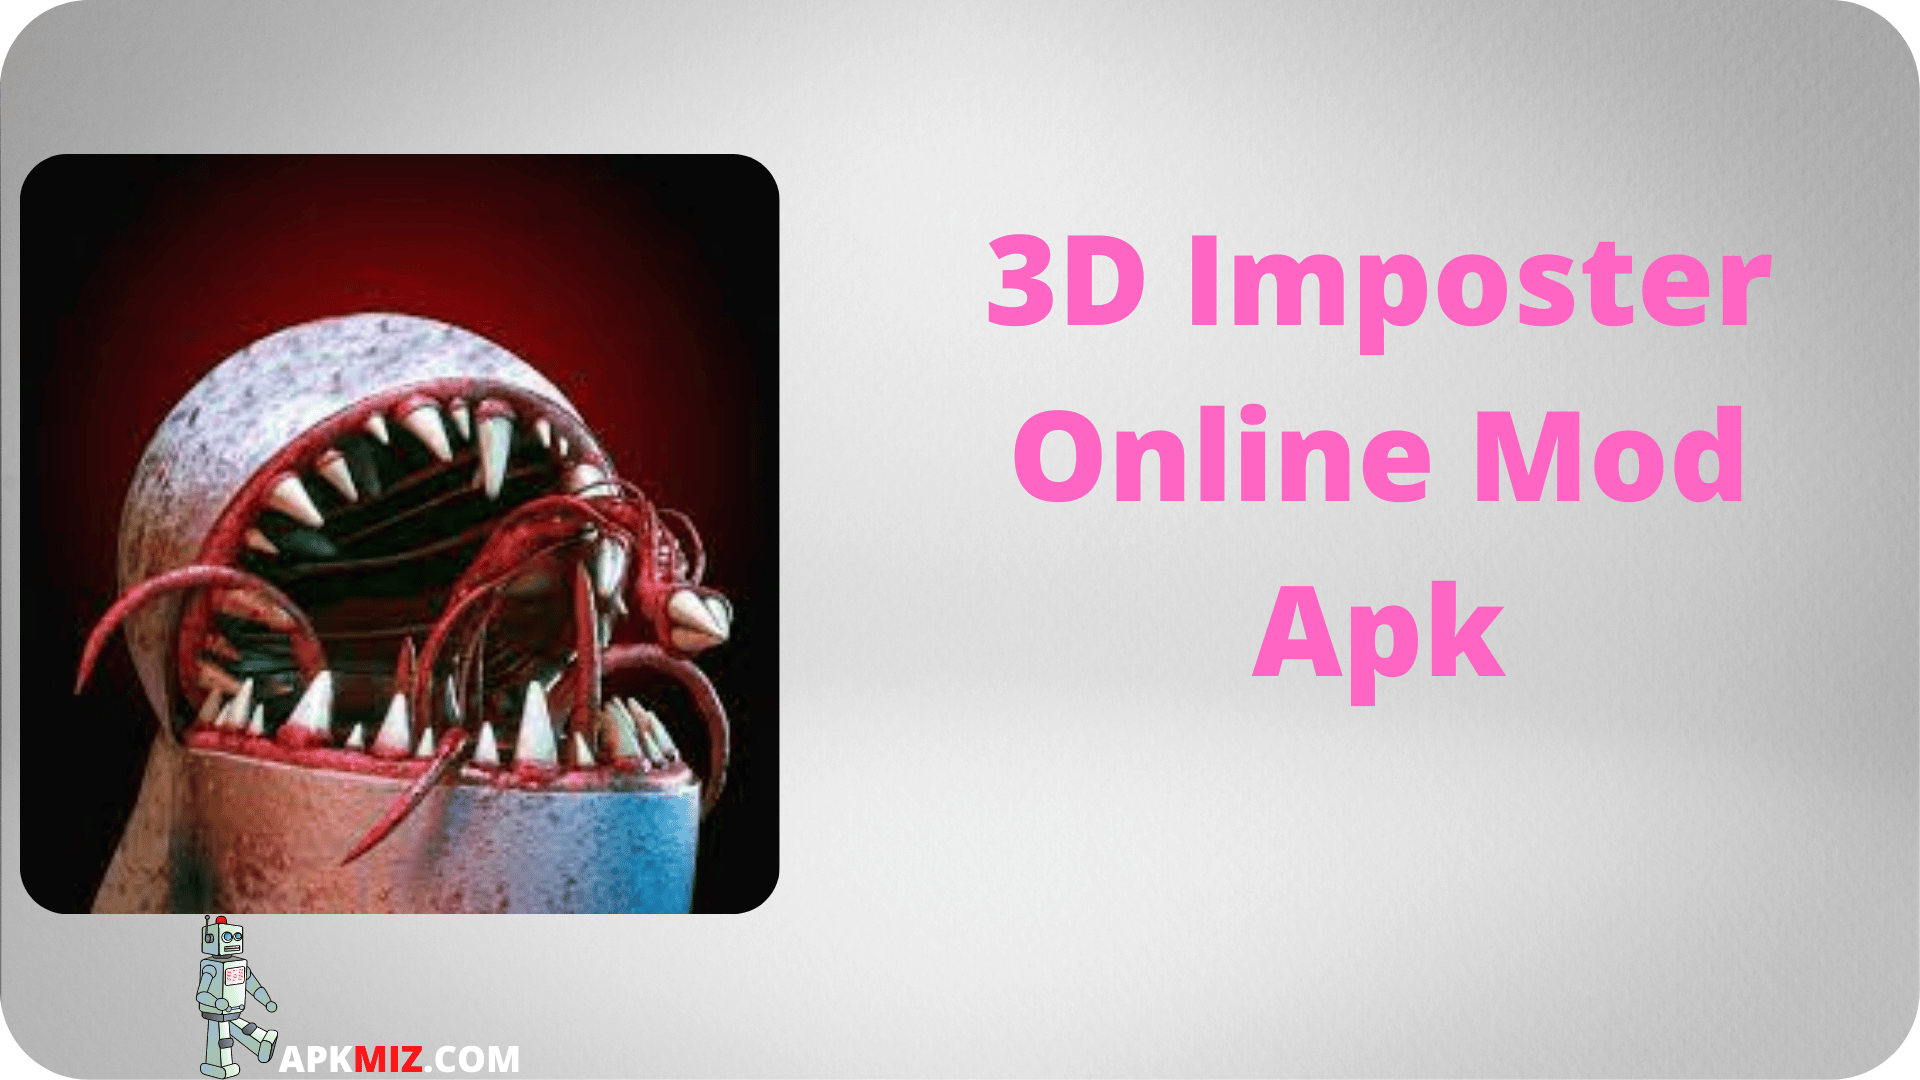 3D Imposter Online Mod Apk